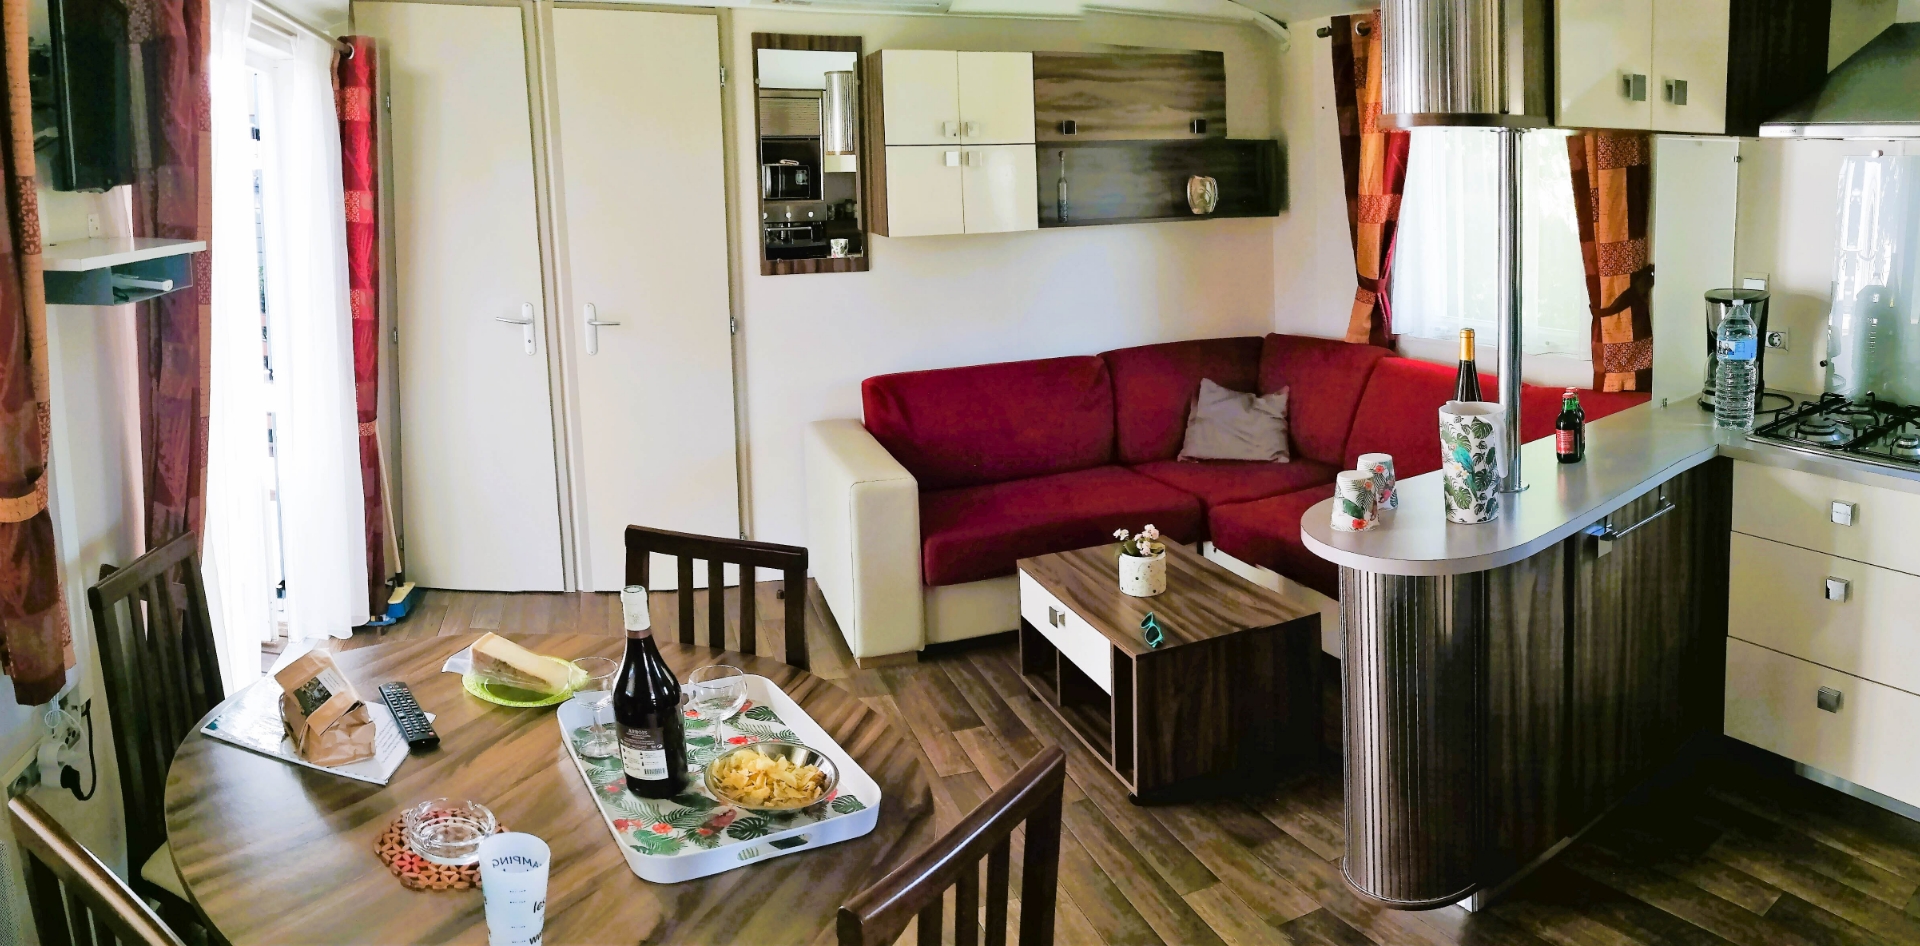 Salon et coin cuisine du mobil-home Privilège 2 chambres, location vacances dans le Jura